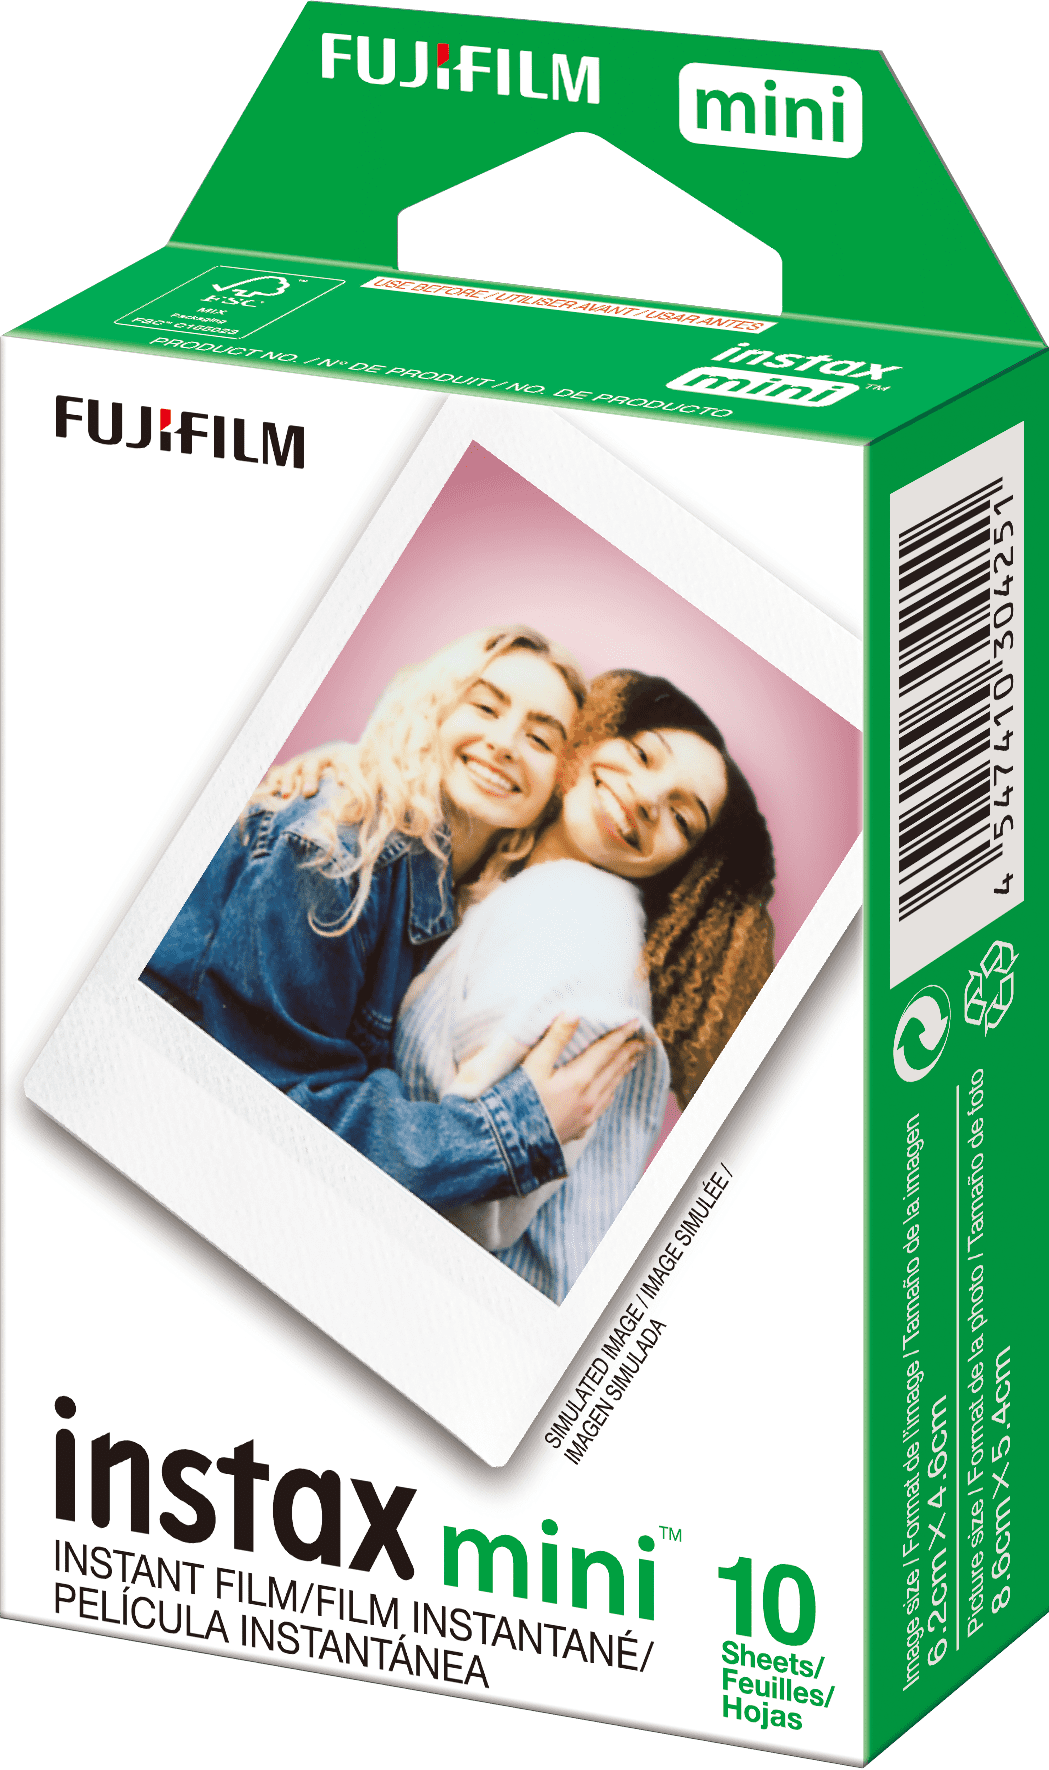 Fujifilm INSTAX Mini 7+ Exclusive Blister Bundle with Bonus Pack of Film  (10-pack Mini Film), Lavender 